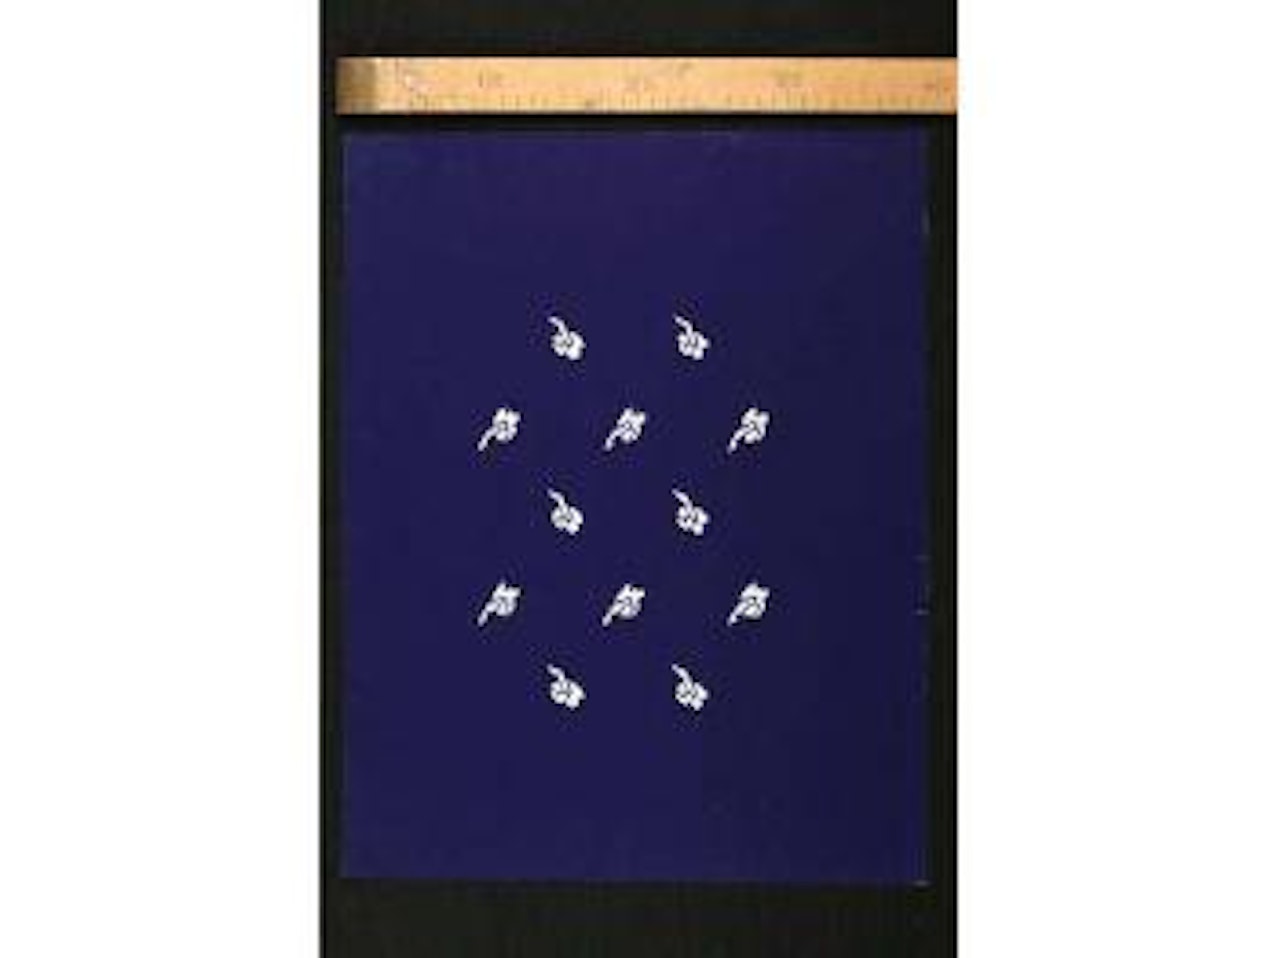 Feuilles stylisees sur fond bleu by Raoul Dufy